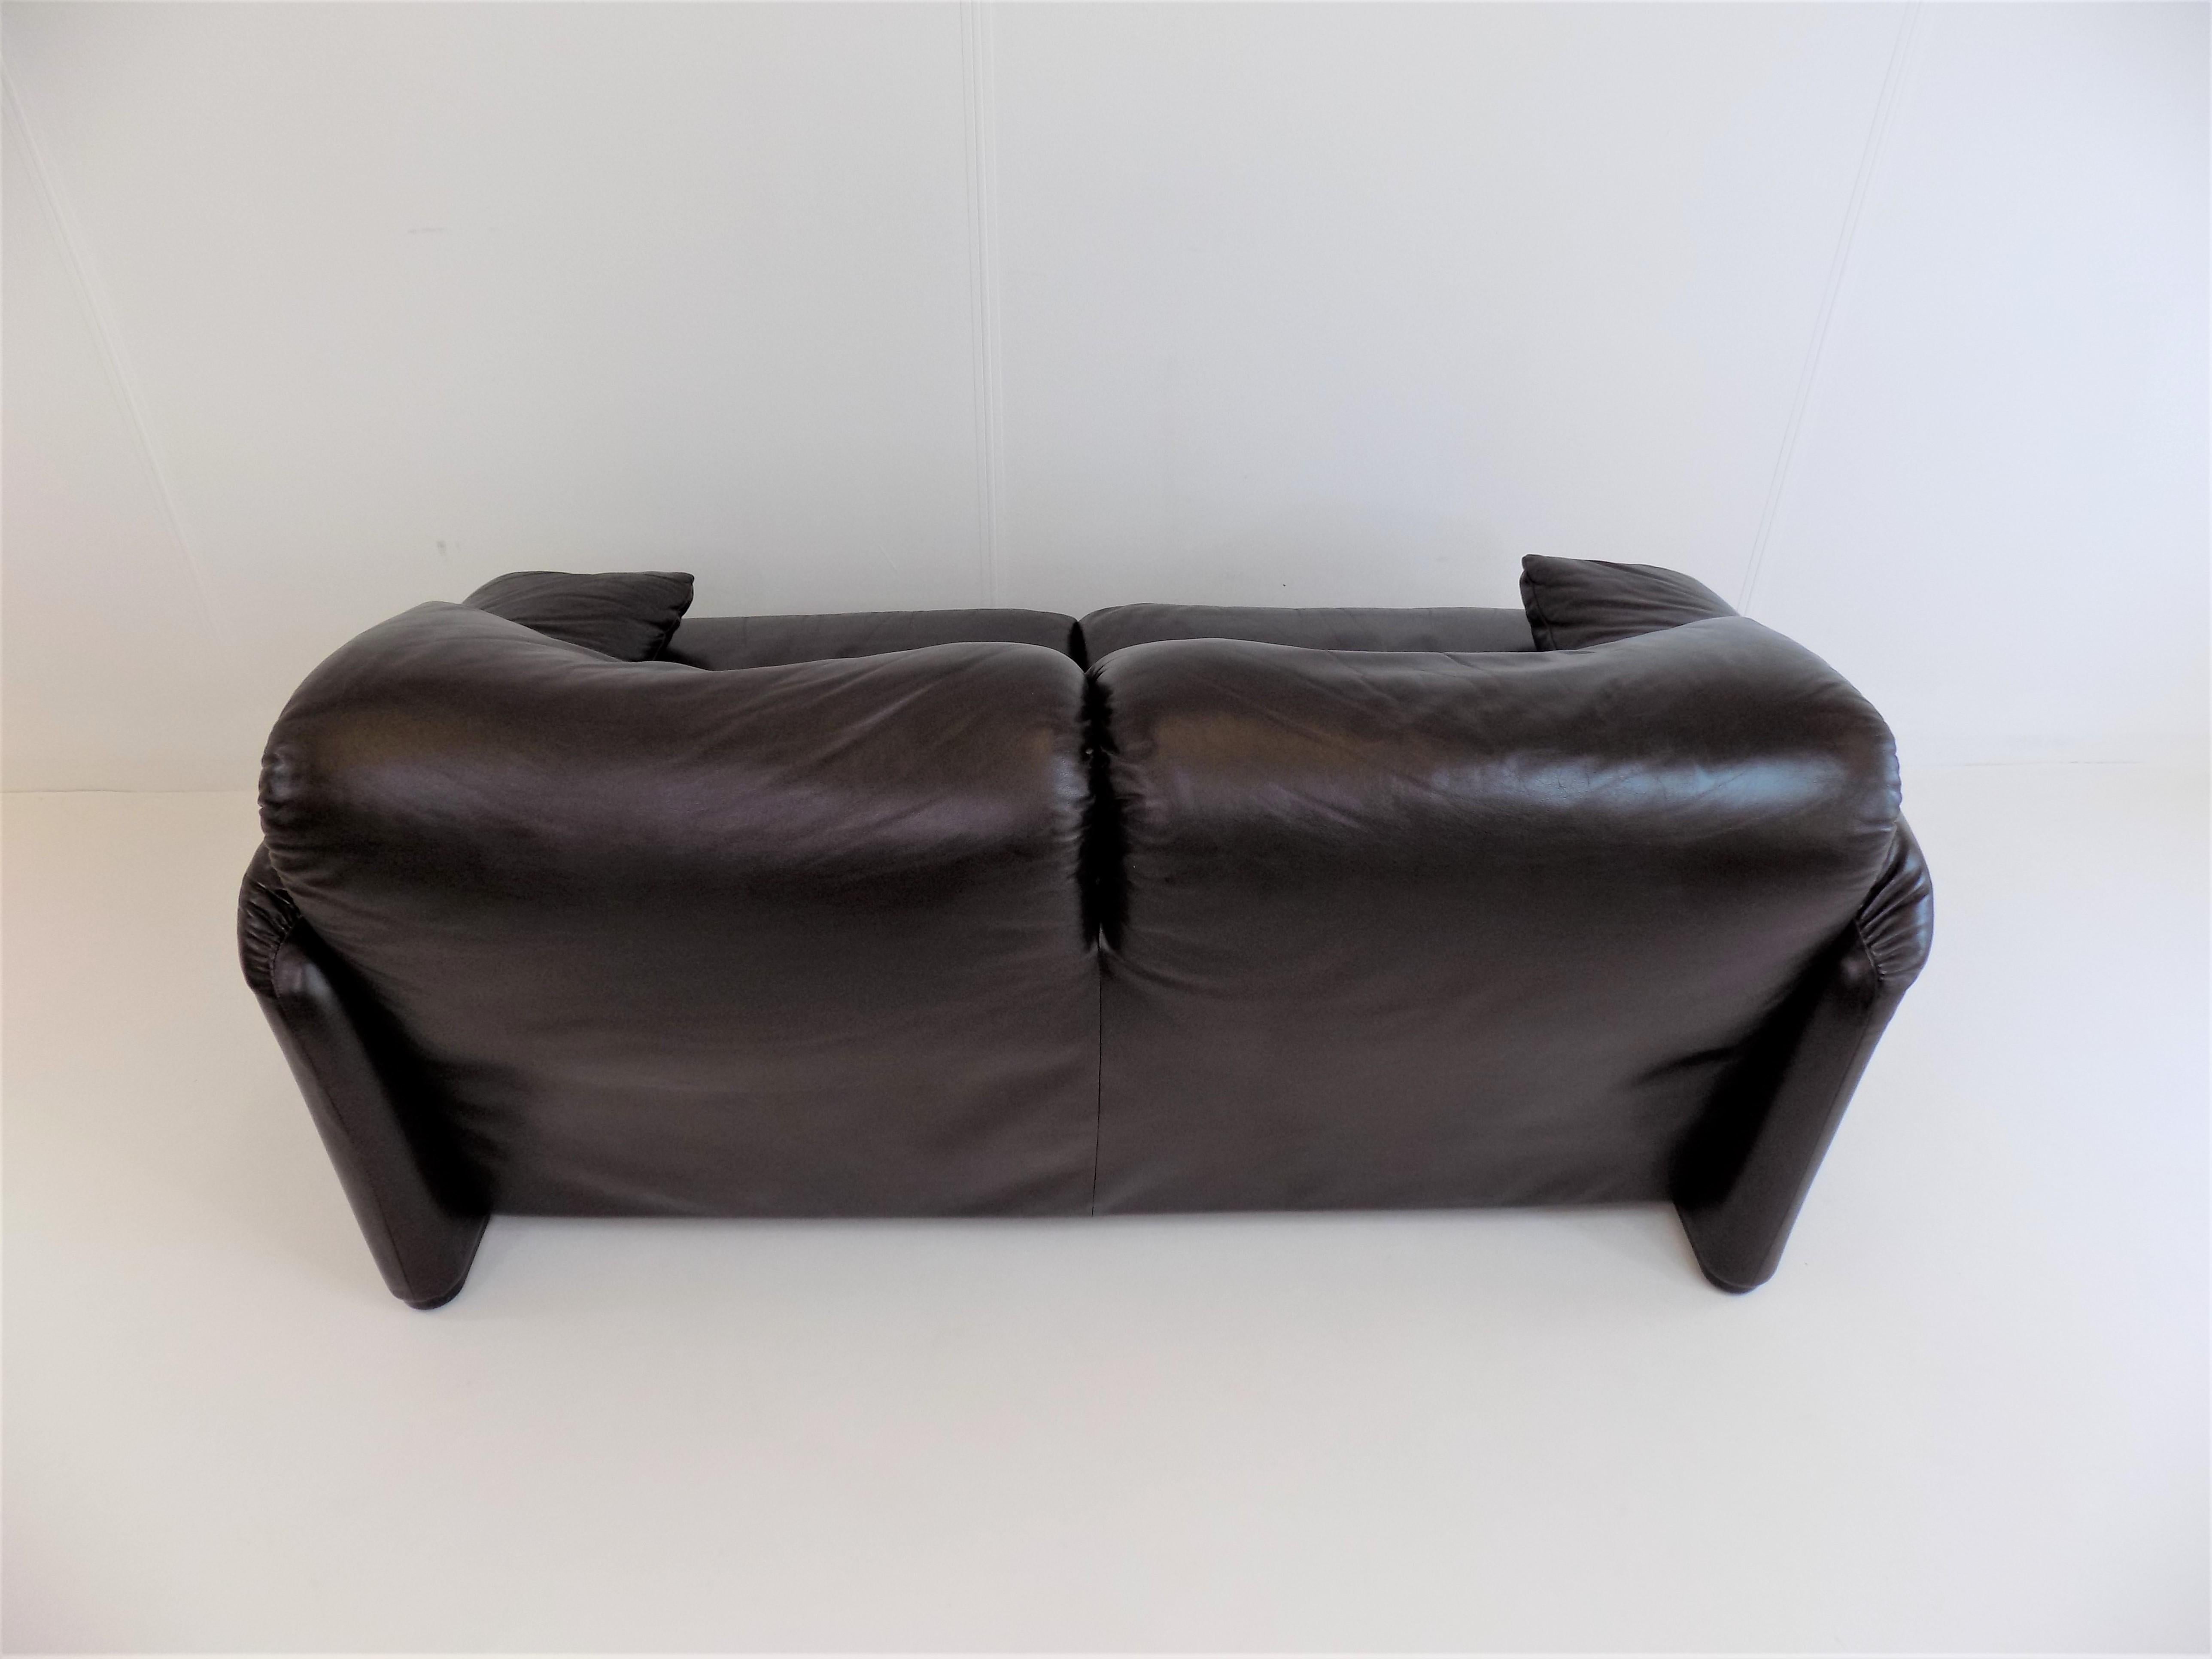 Late 20th Century Cassina Maralunga 2 Seater Leather Sofa by Vico Magistretti